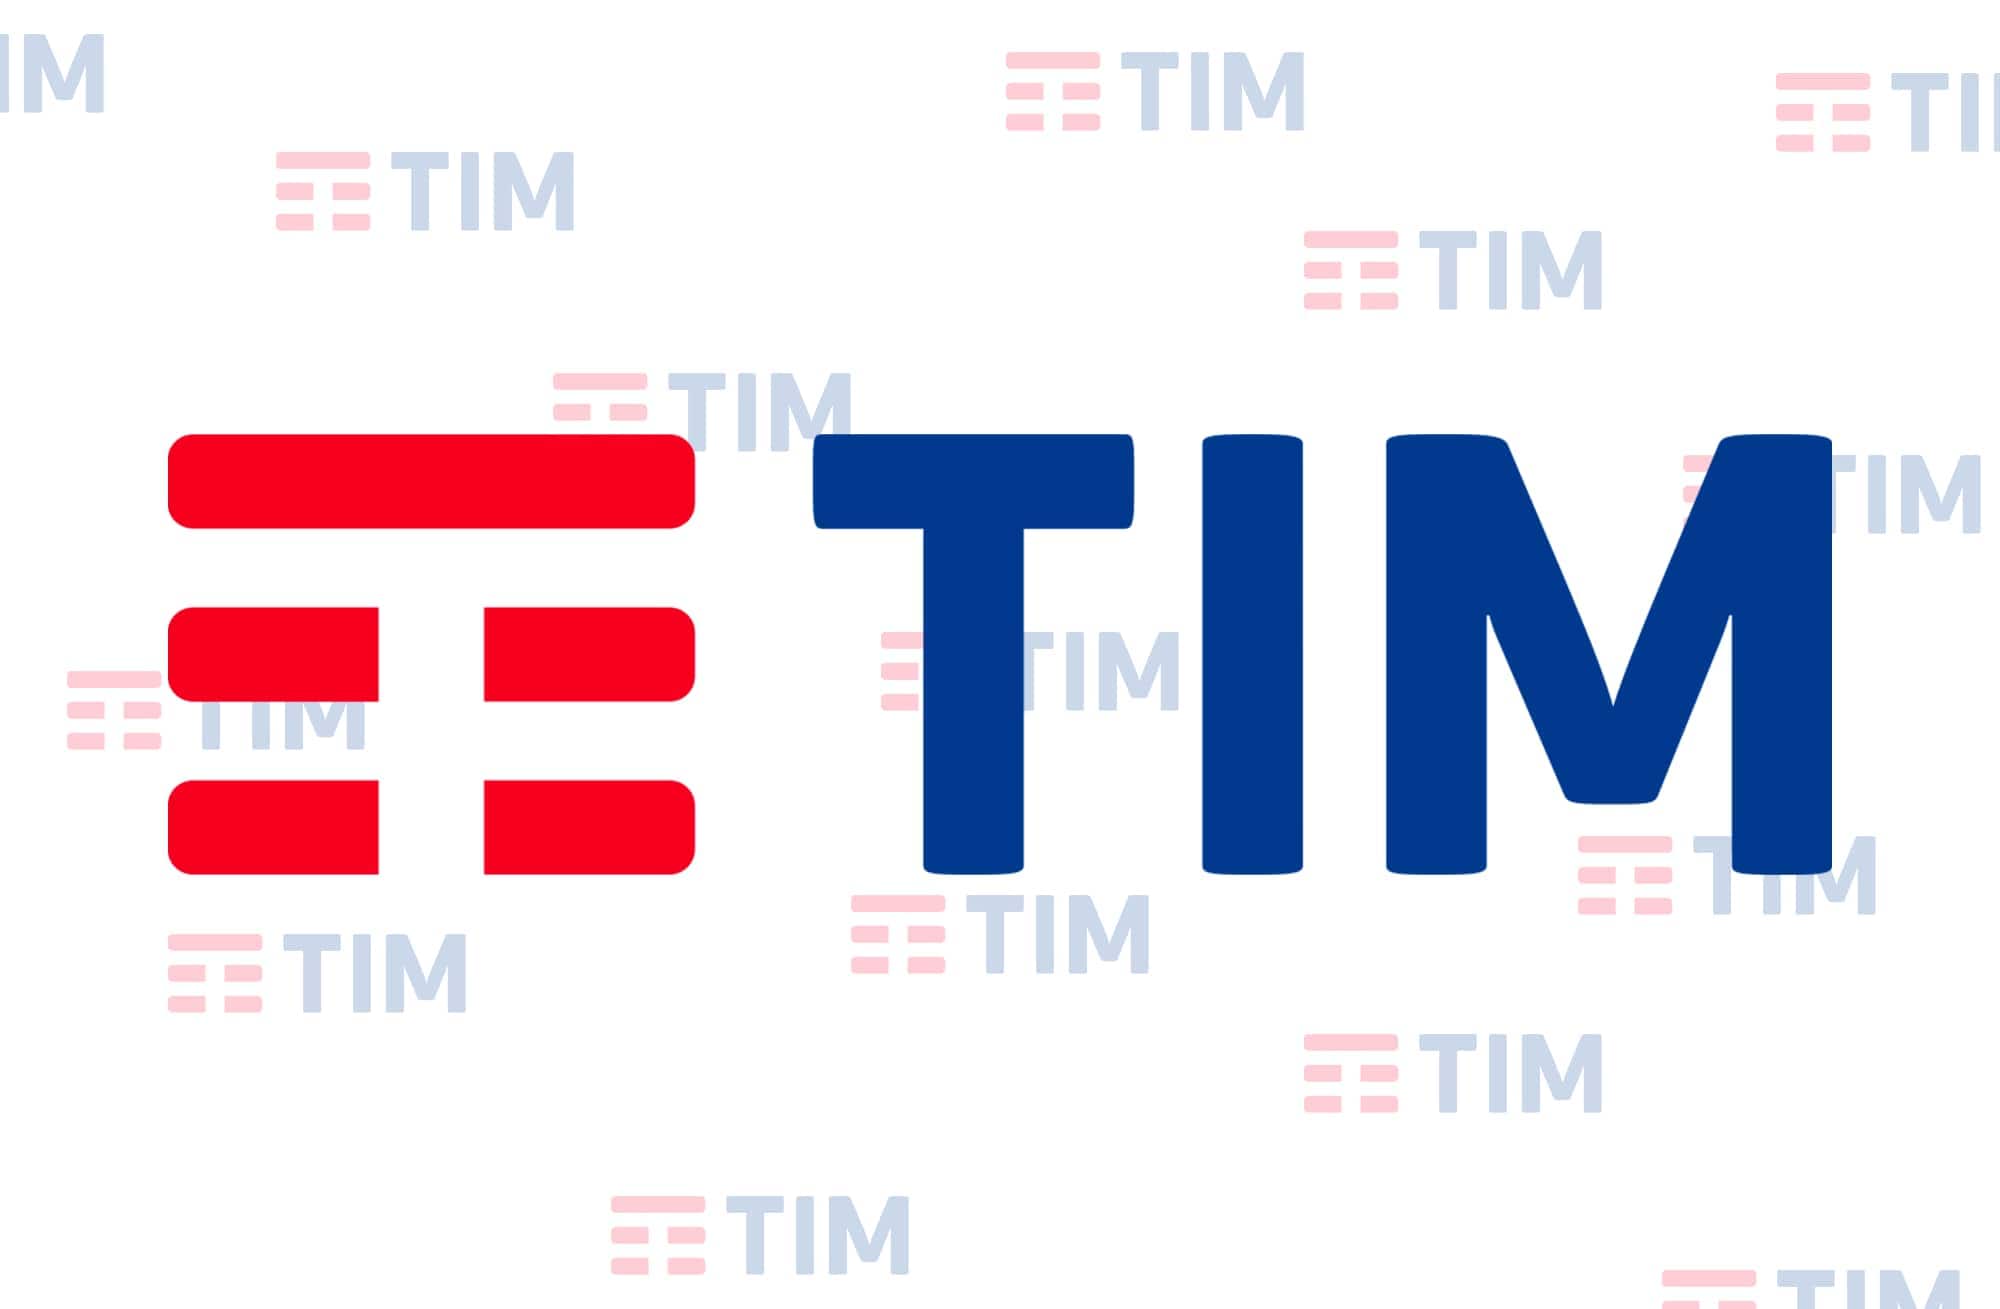 TIM vuole convincervi a rinunciare una volta per tutte alle fatture cartacee aumentandone il costo di 0,50€